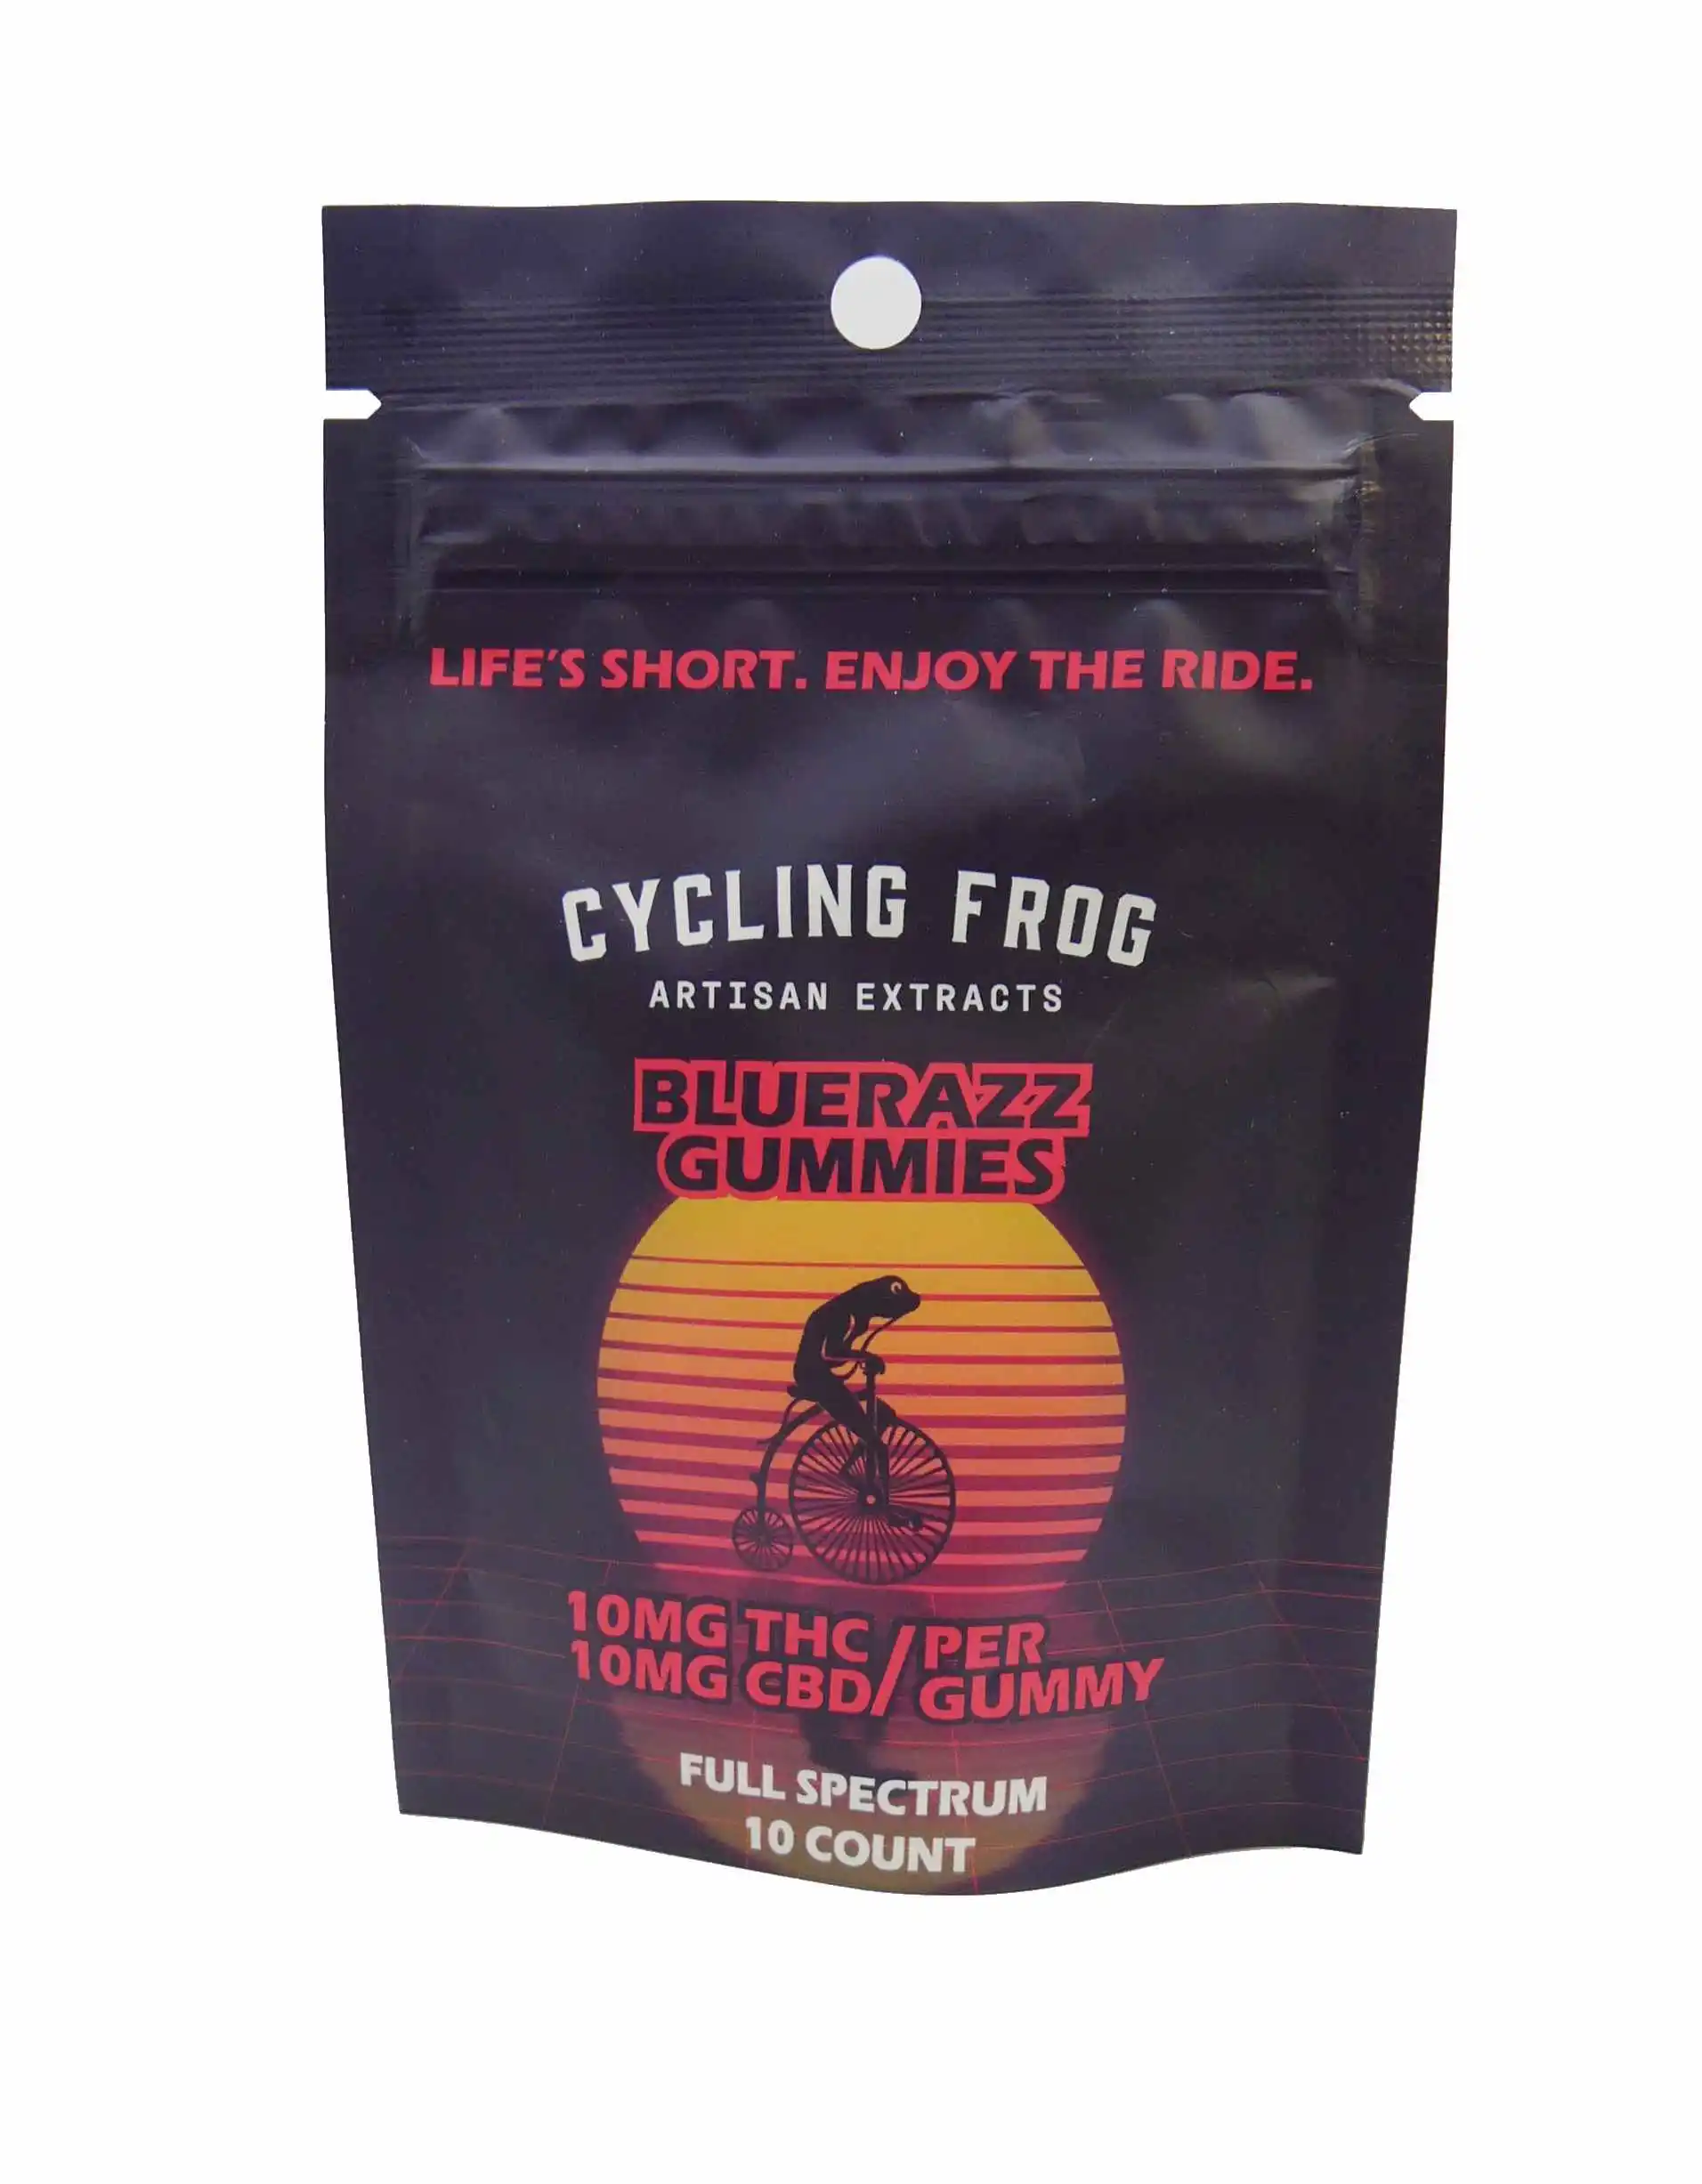 Cycling Frog BlueRazz Gummies 10mg THC & 10mg CBD